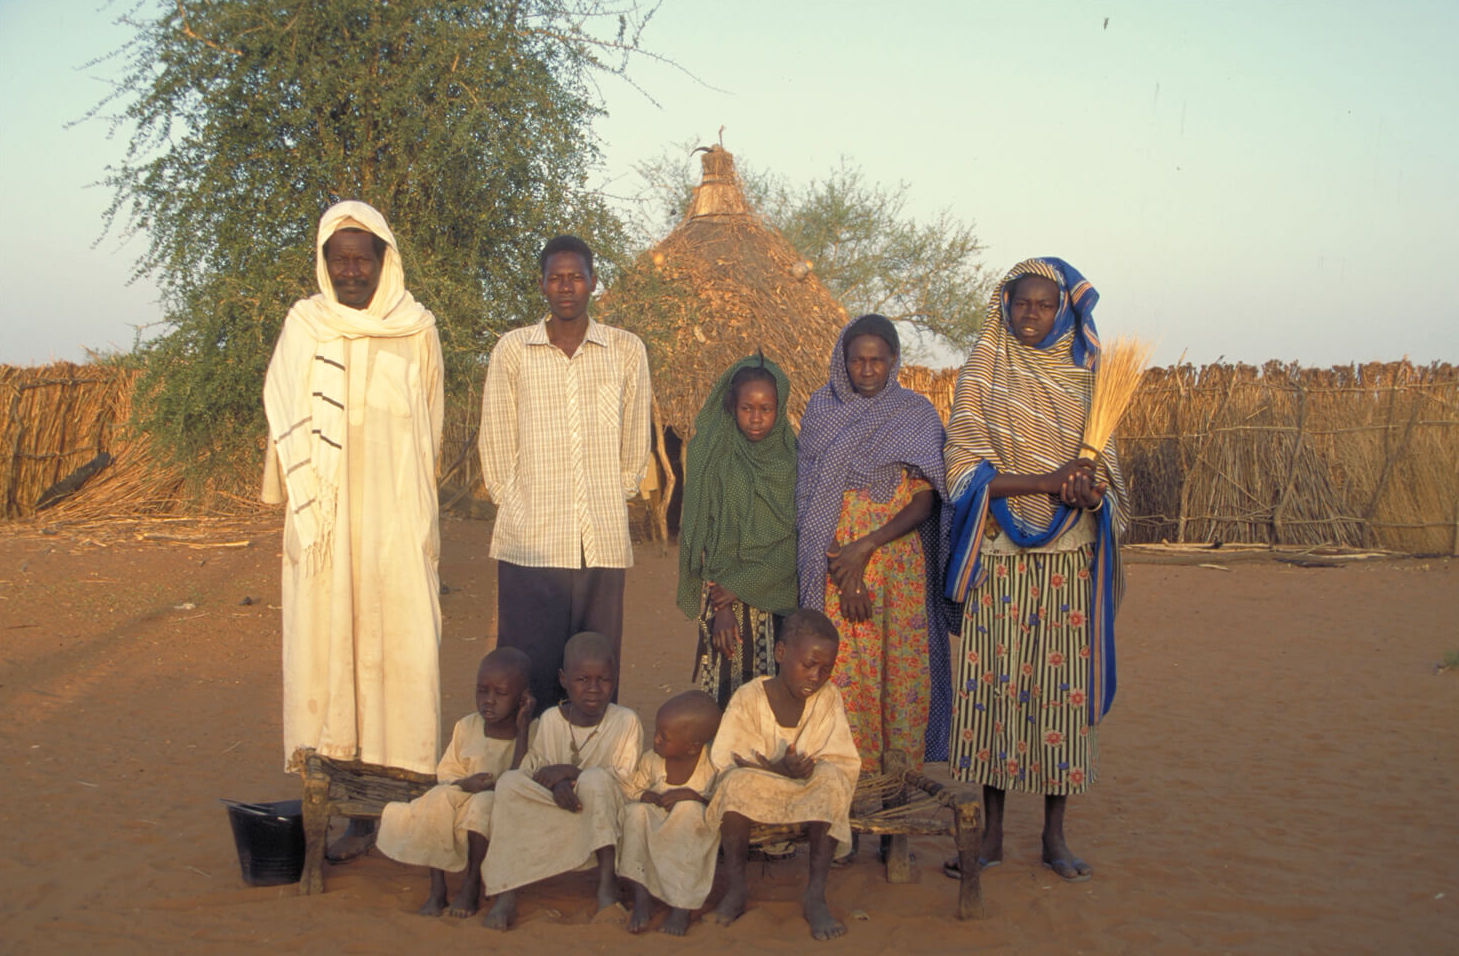 North Sudan – The article